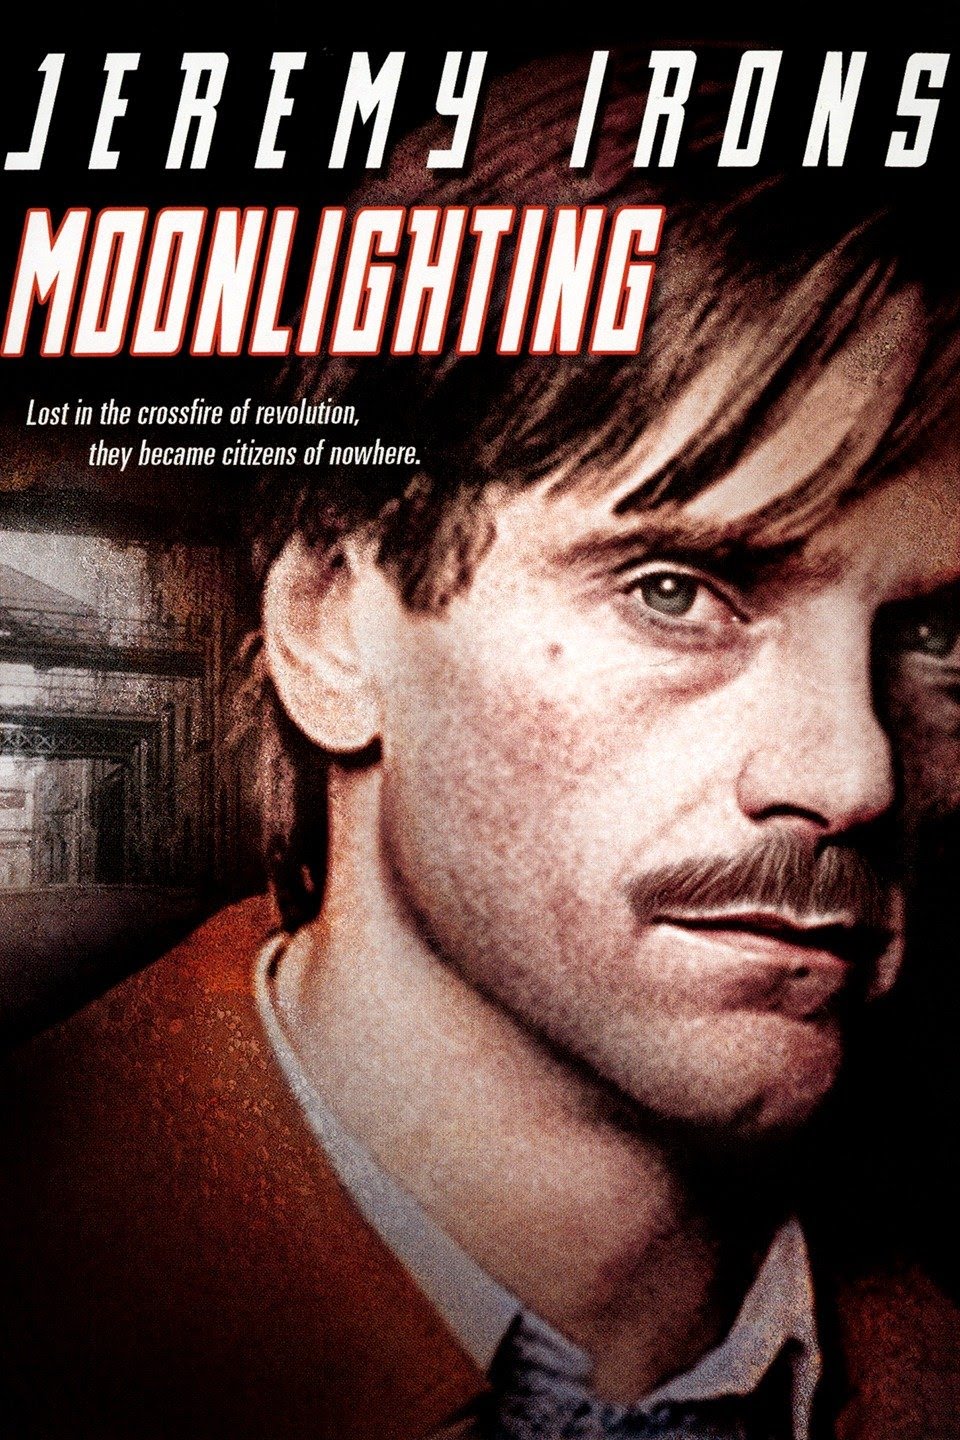 فيلم Moonlighting 1982 مترجم اونلاين